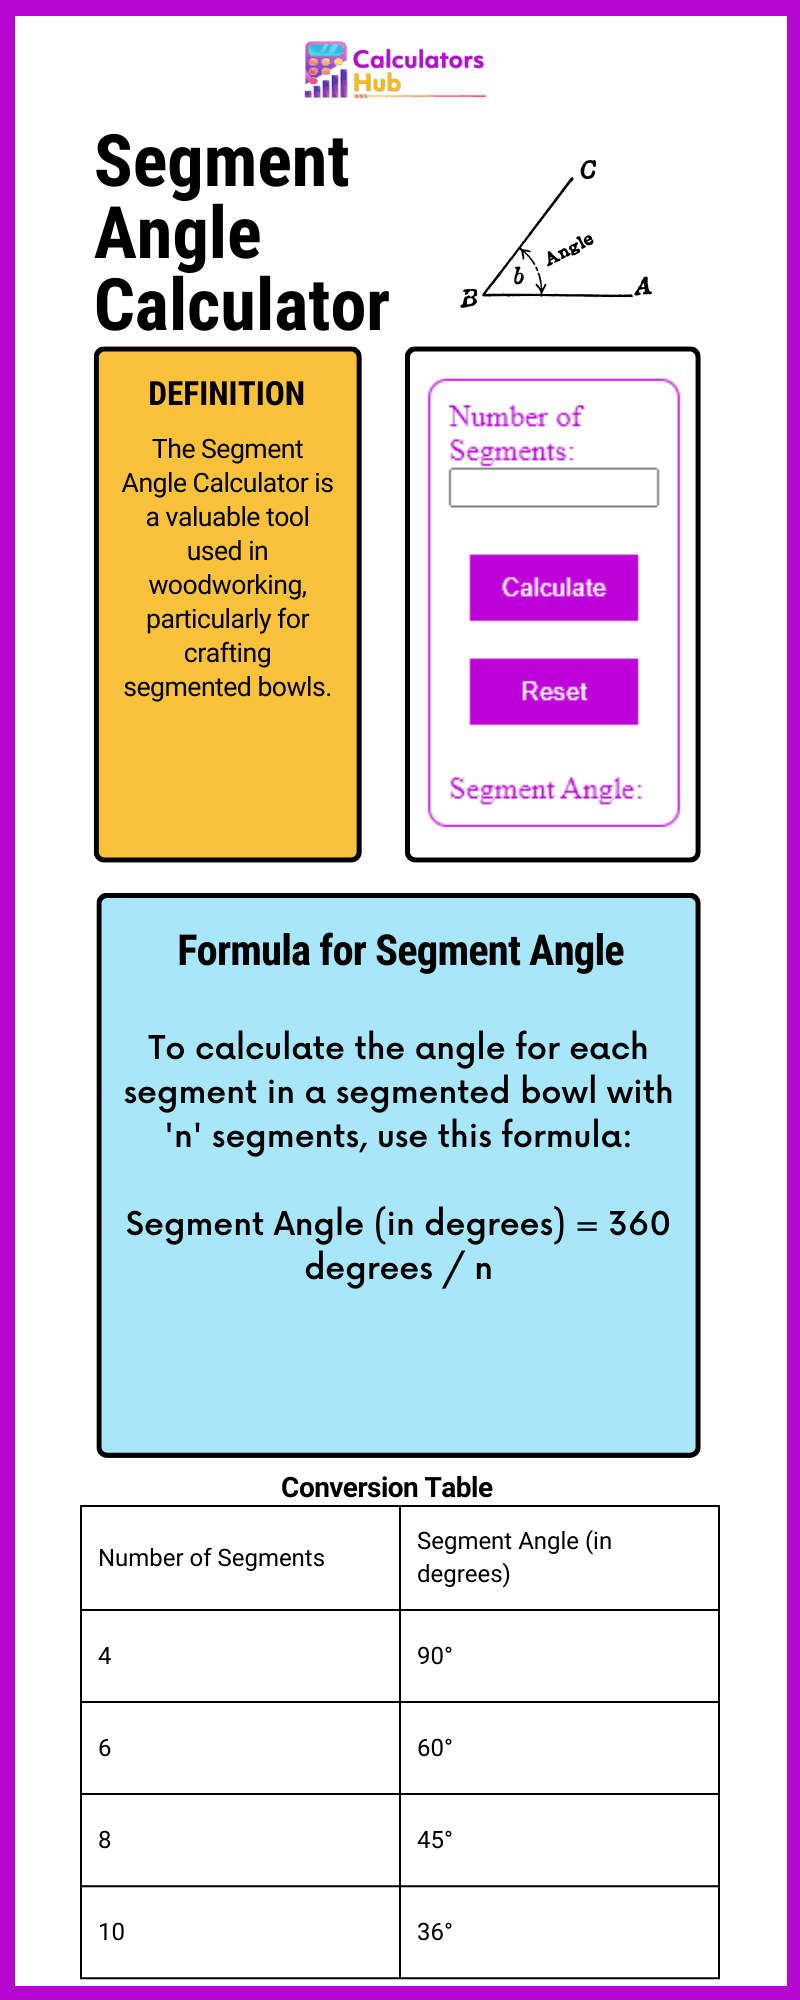 Segment Angle Calculator